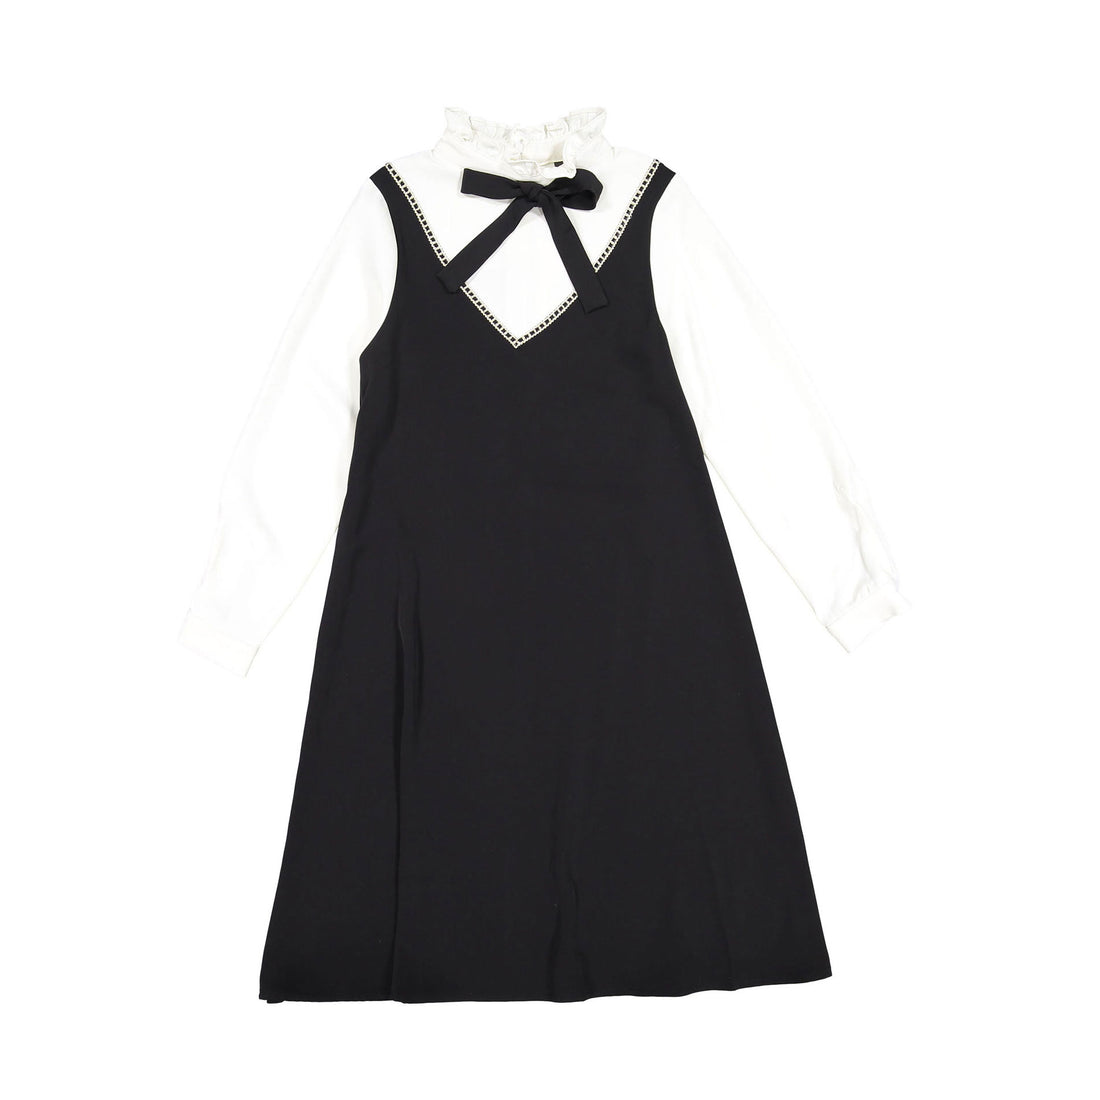 A4 Black/White Two Tone Slip Dress